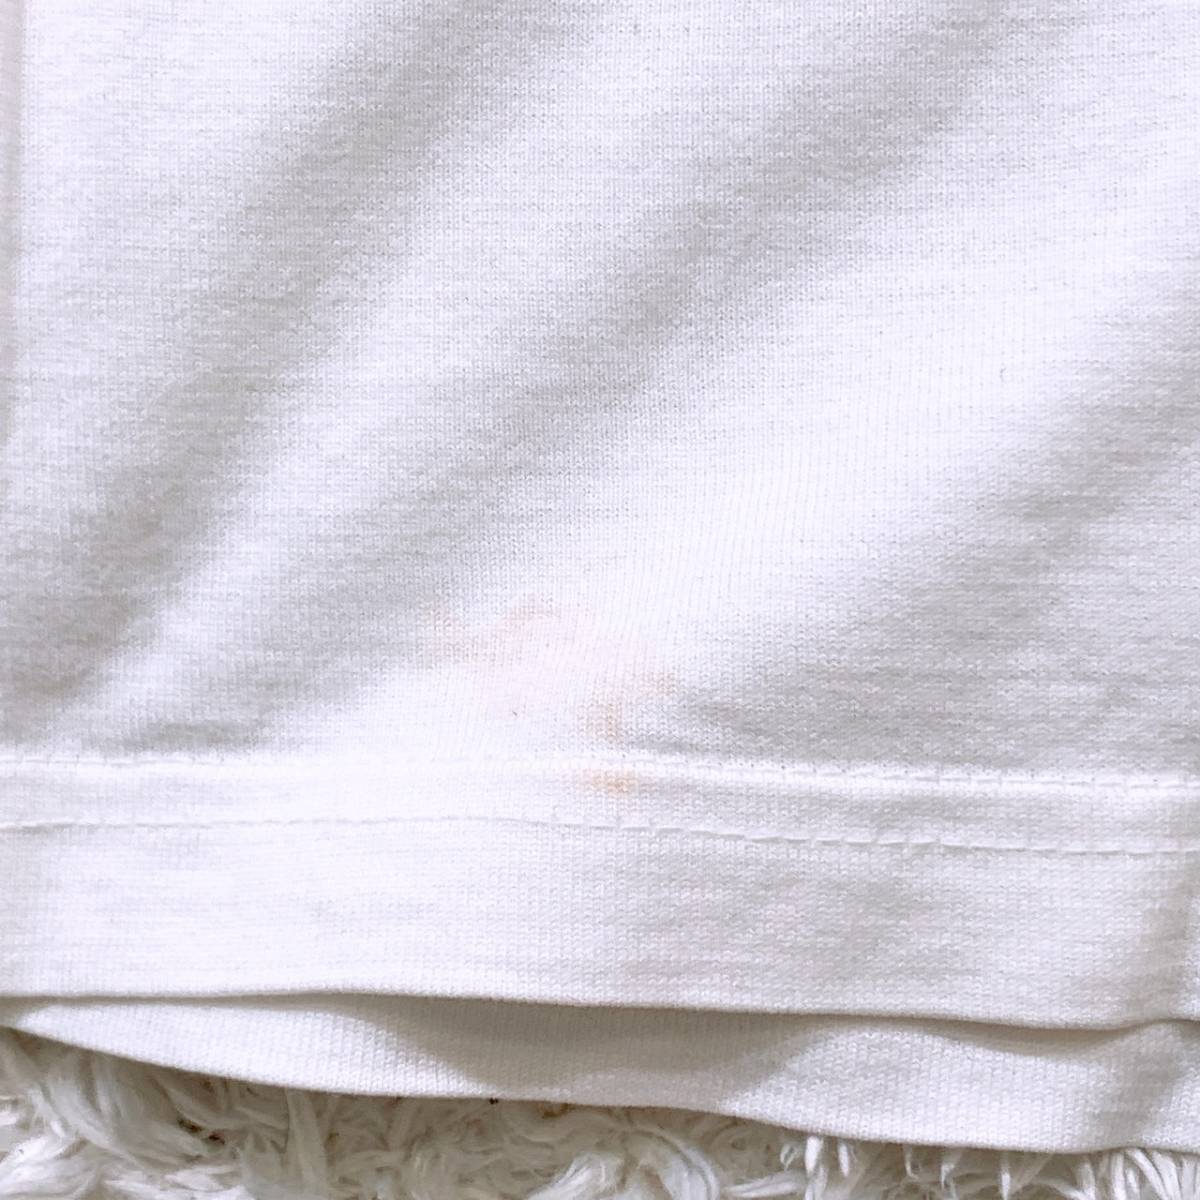 メンズ MICHIKO LONDON JEANS Tシャツ 白 ホワイト 胸ロゴ入り カジュアル インナー ミチコロンドン 【21580】